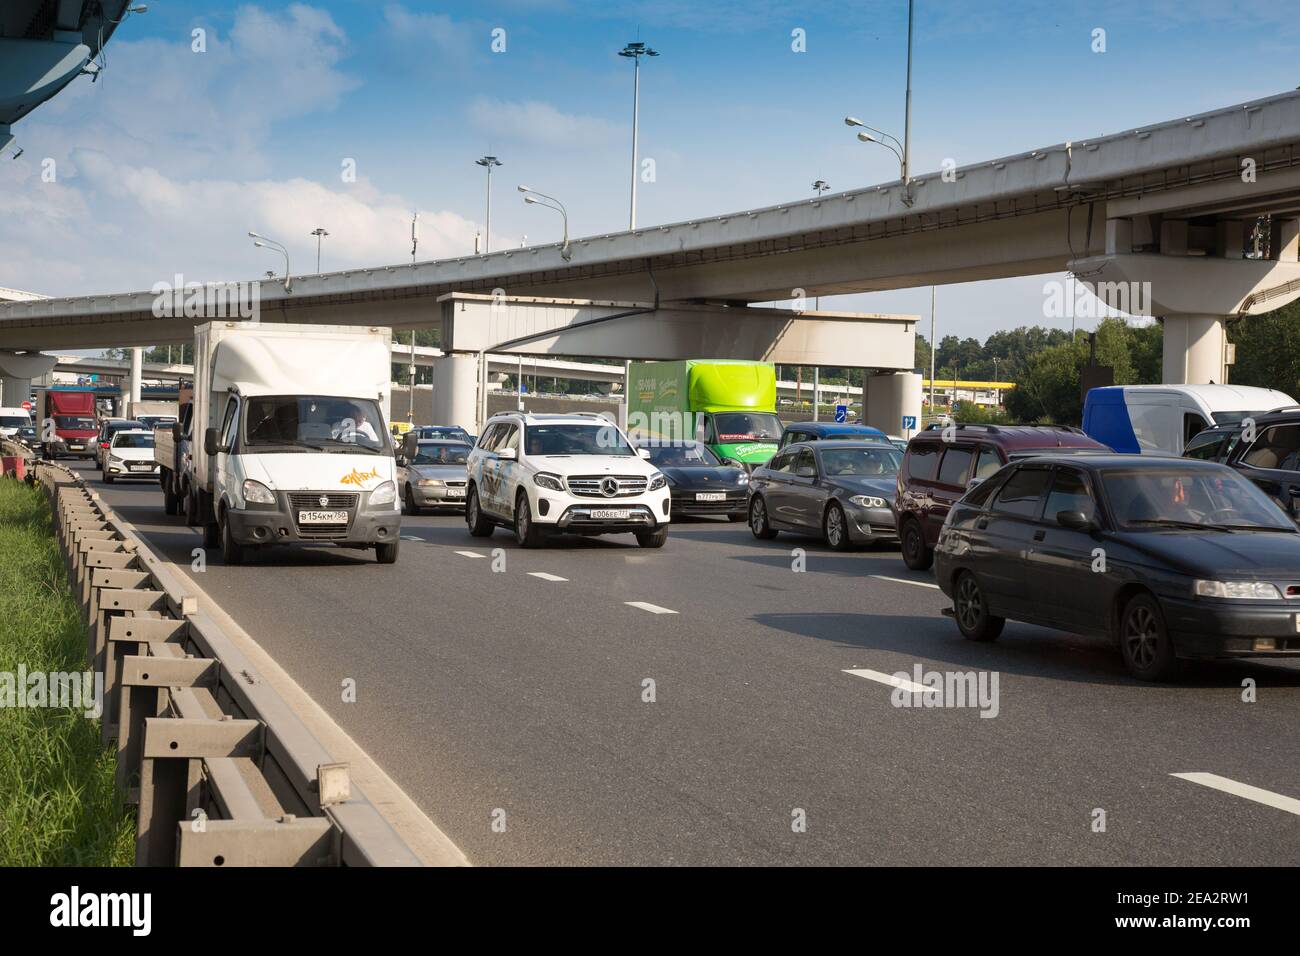 MOSKAU-RUSSLAND: .Mehrspurstraße mit Autos und Lastwagen. Überführung im Hintergrund. Noworischskoe Autobahn und Überführung des Moskauer Rings Stockfoto